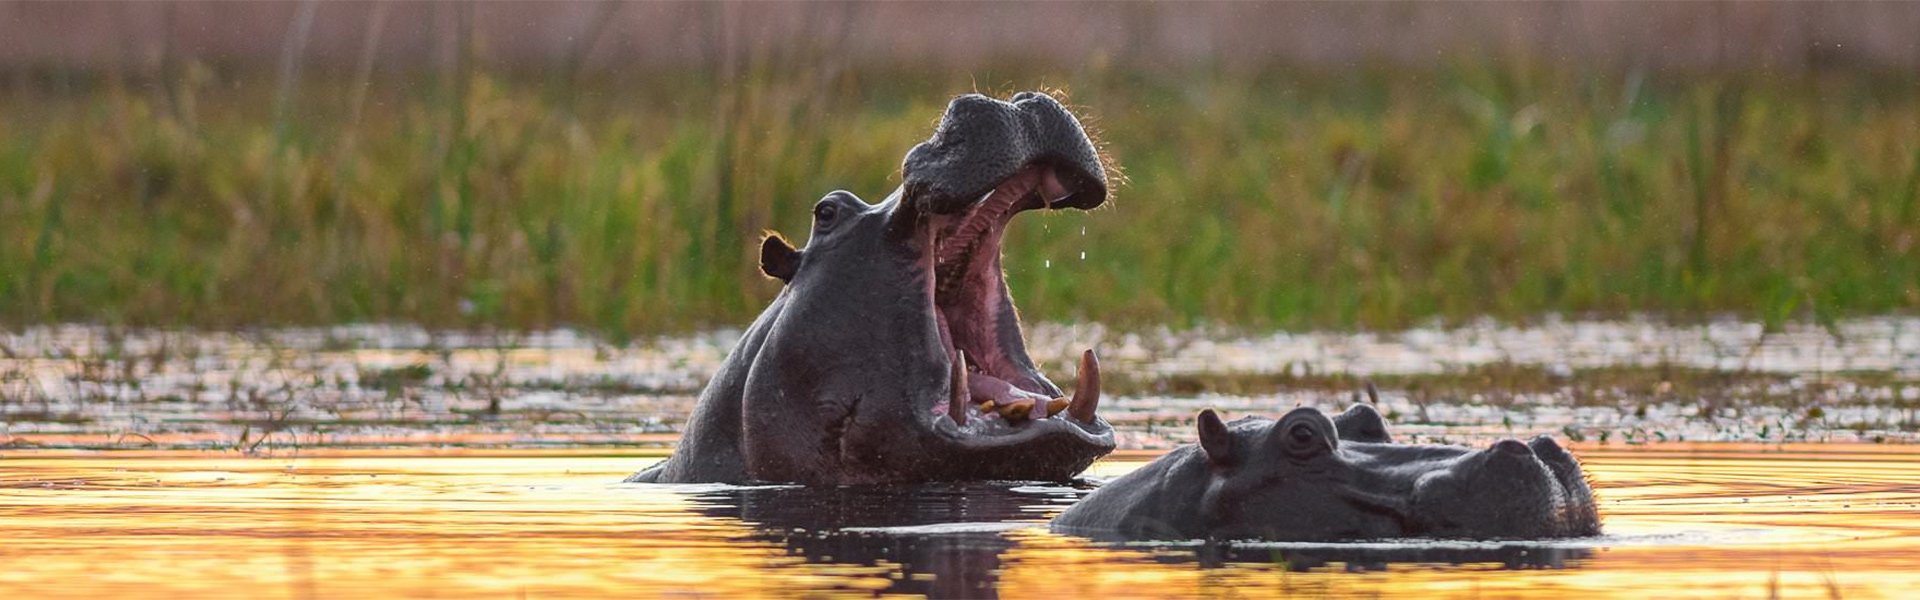 Zwei Hippos im Sonnenuntergang |  Rainer von Brandis, iStockphoto.com / Chamleon